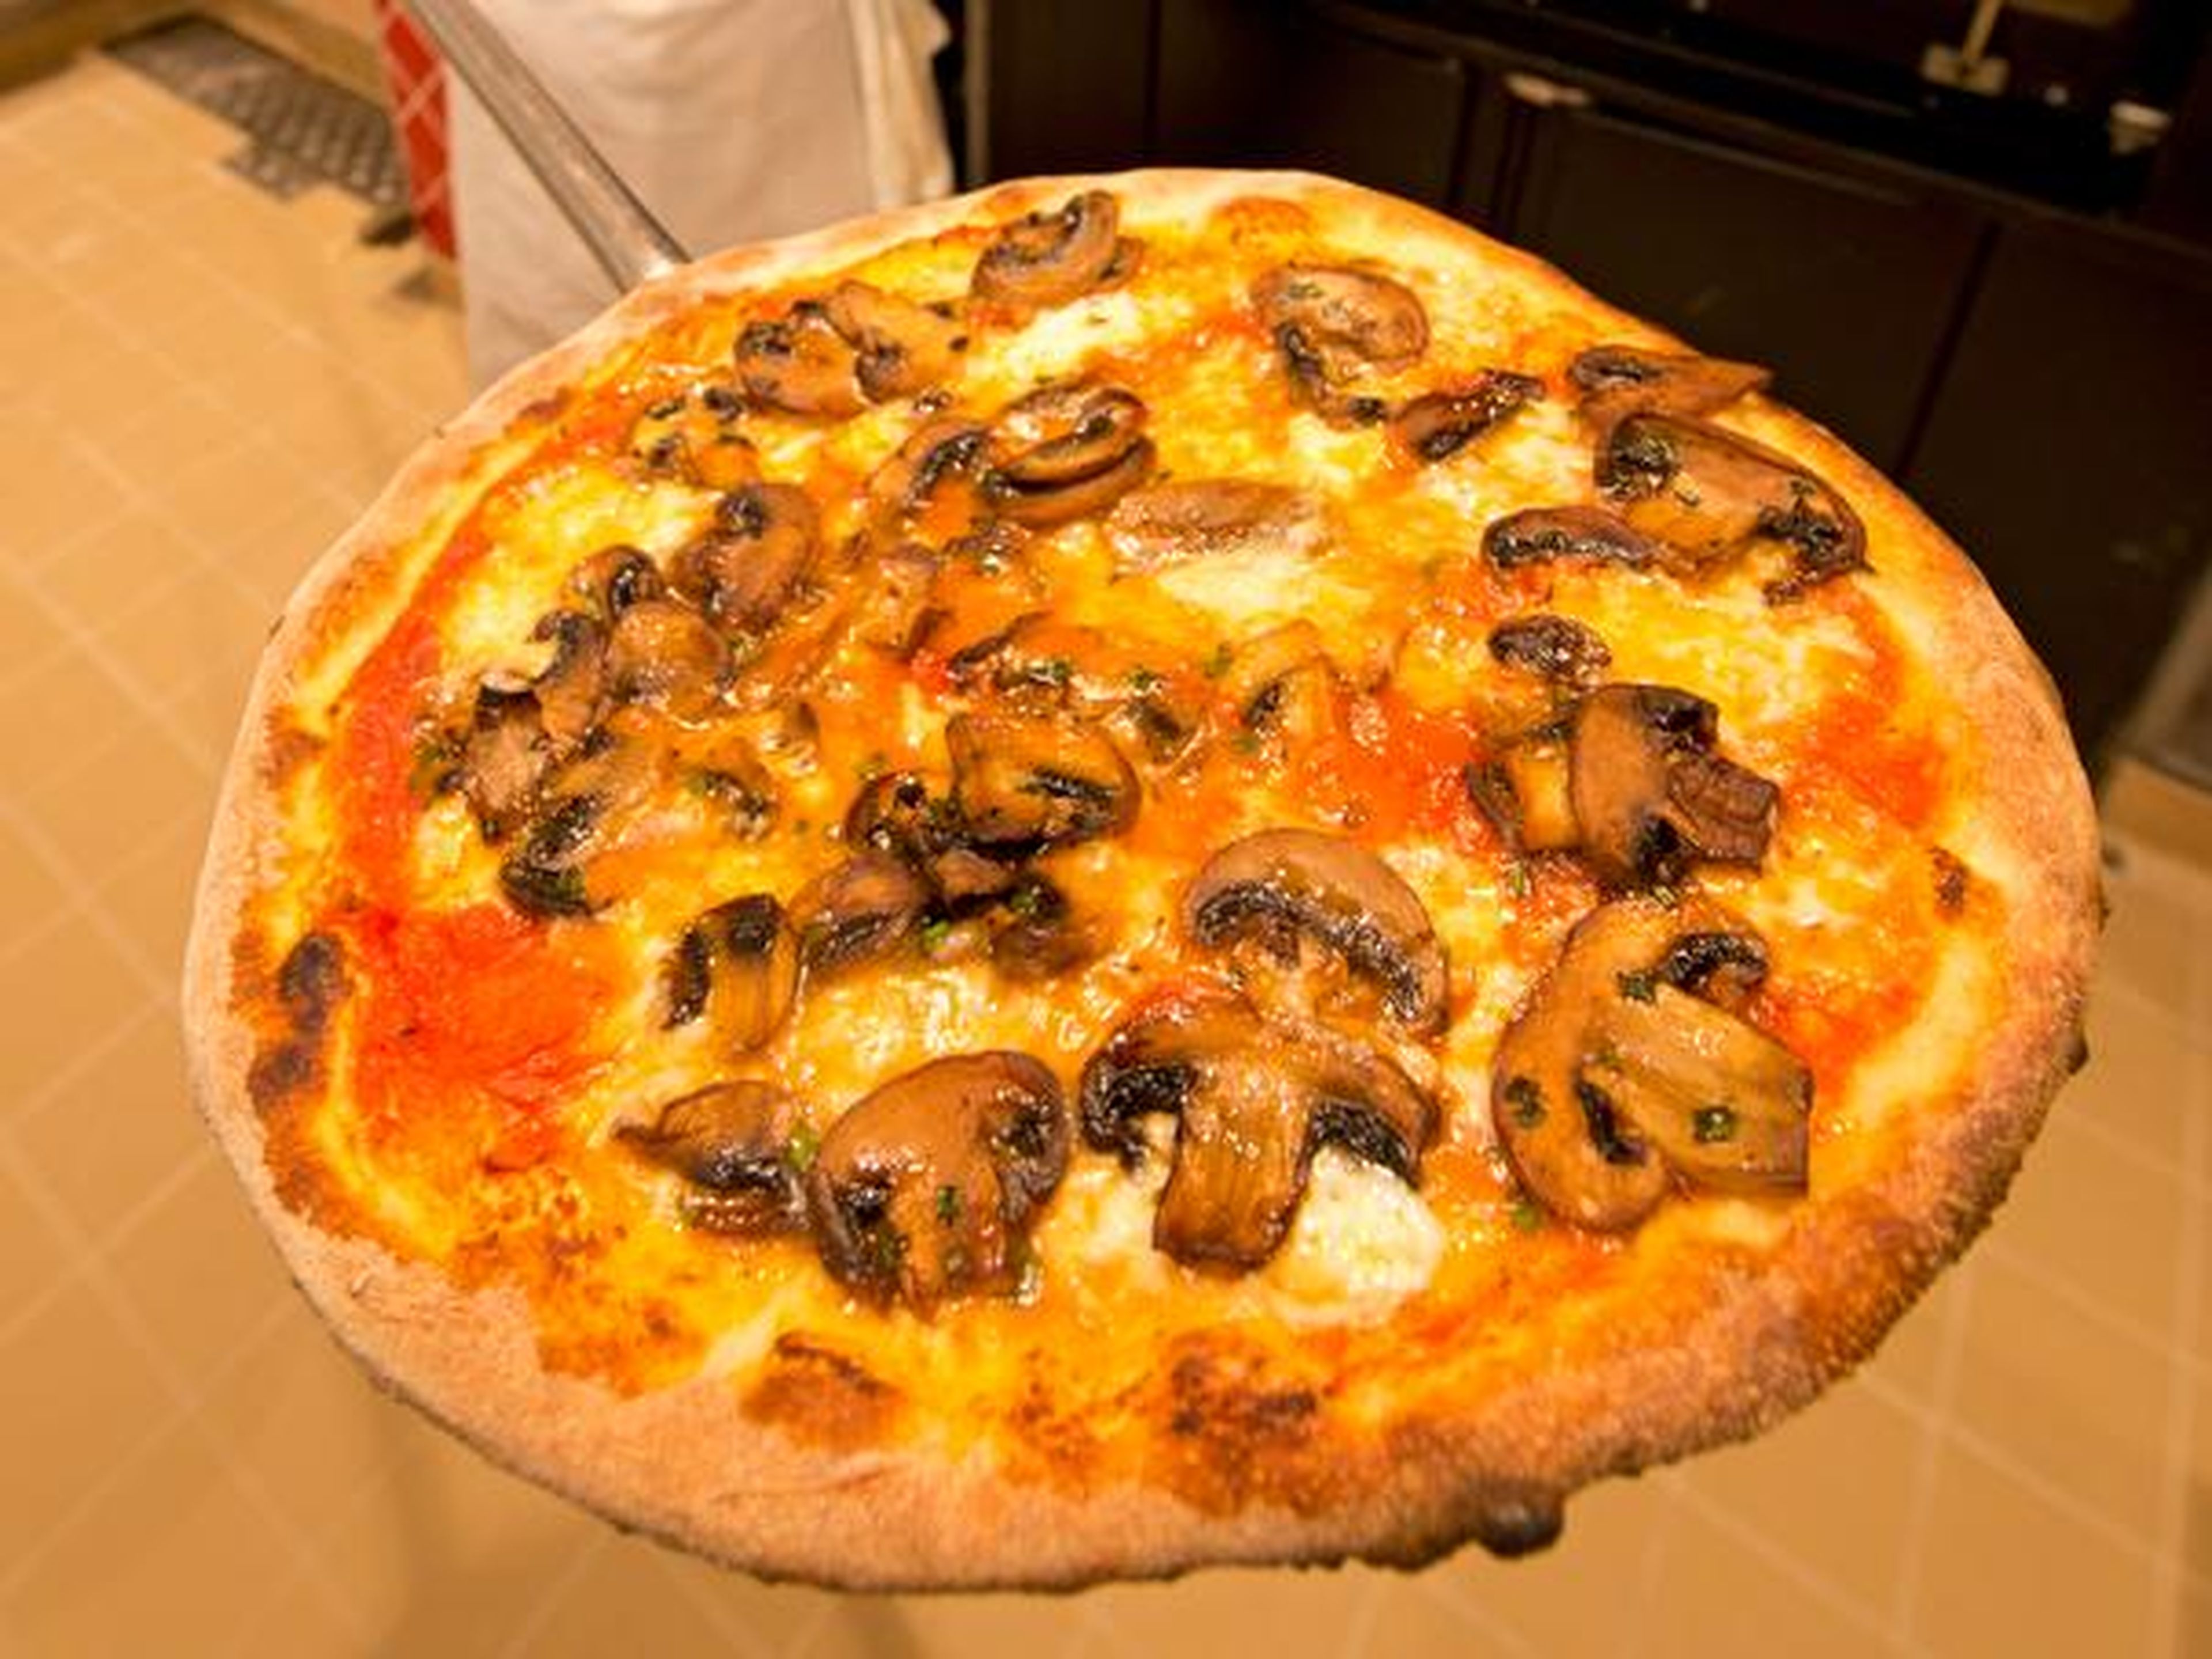 Los huéspedes de los Cruceros Carnival pueden pedir pizza, cerveza y soda sin importar en qué parte del barco se encuentran, según la compañía.